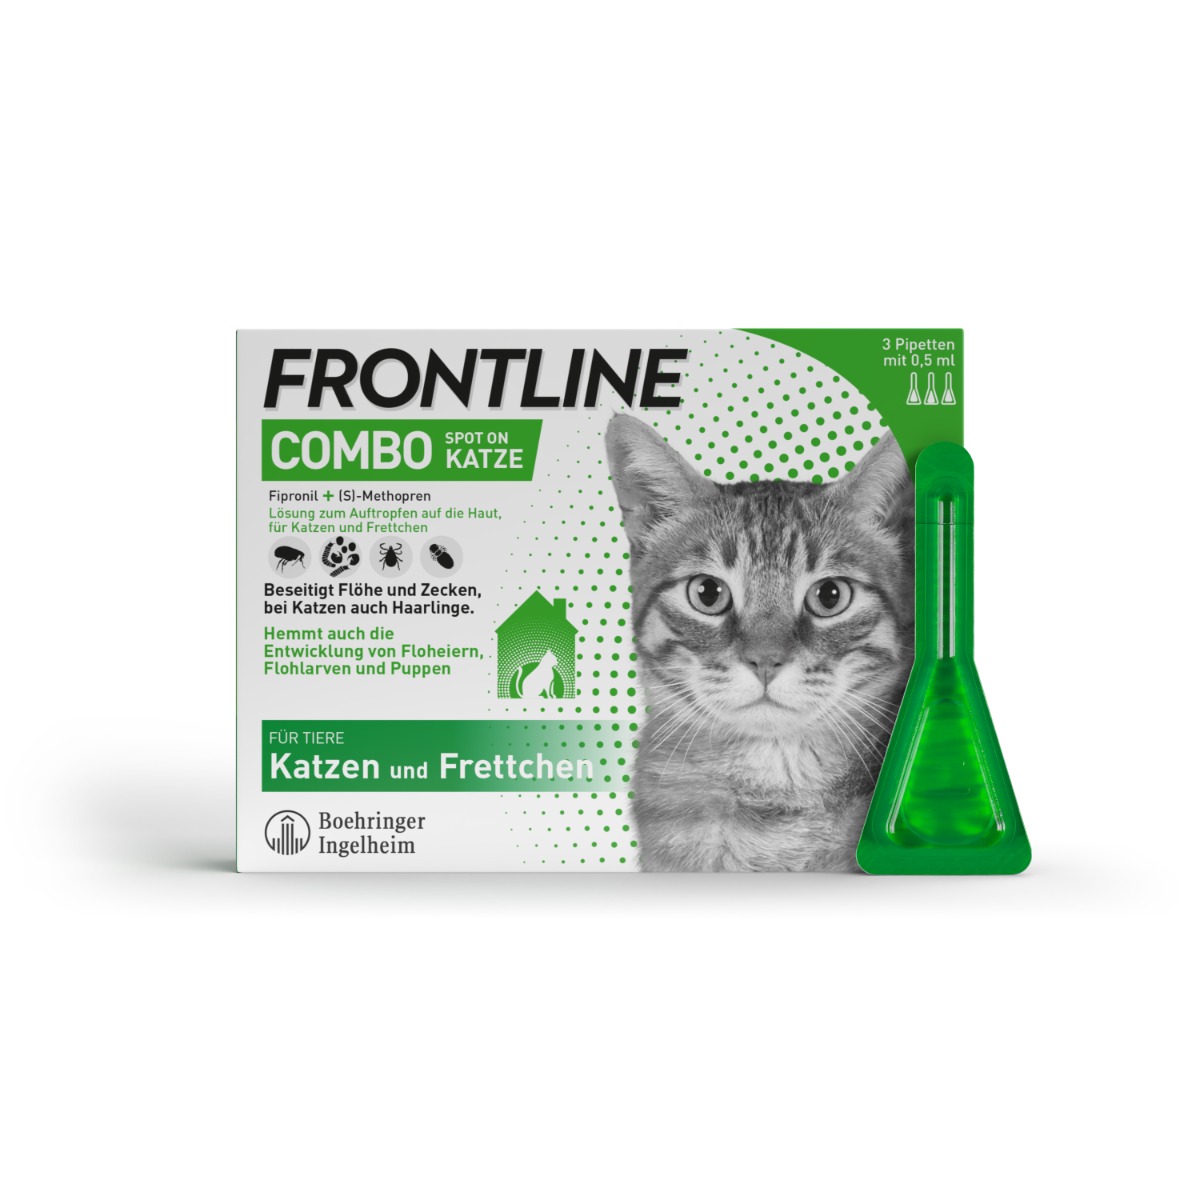 Abbildung Frontline Combo Spot on Katze, Lösung zum Auftropfen auf die Haut, für Katzen und Frettchen